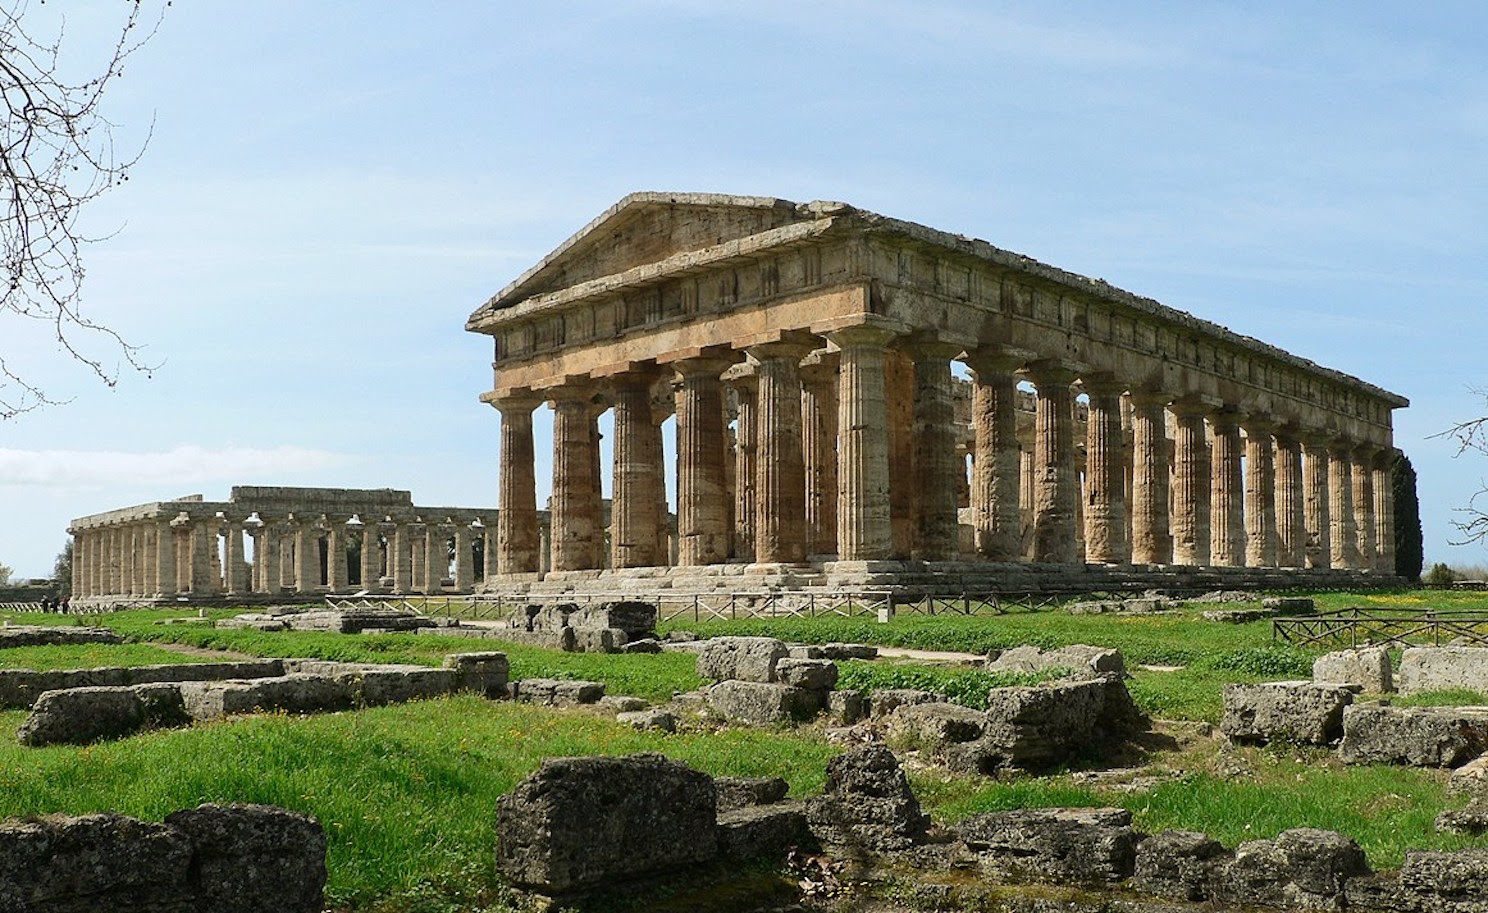 Paestum,al Parco archeologico ingresso gratuito per Giornata della disabilita’